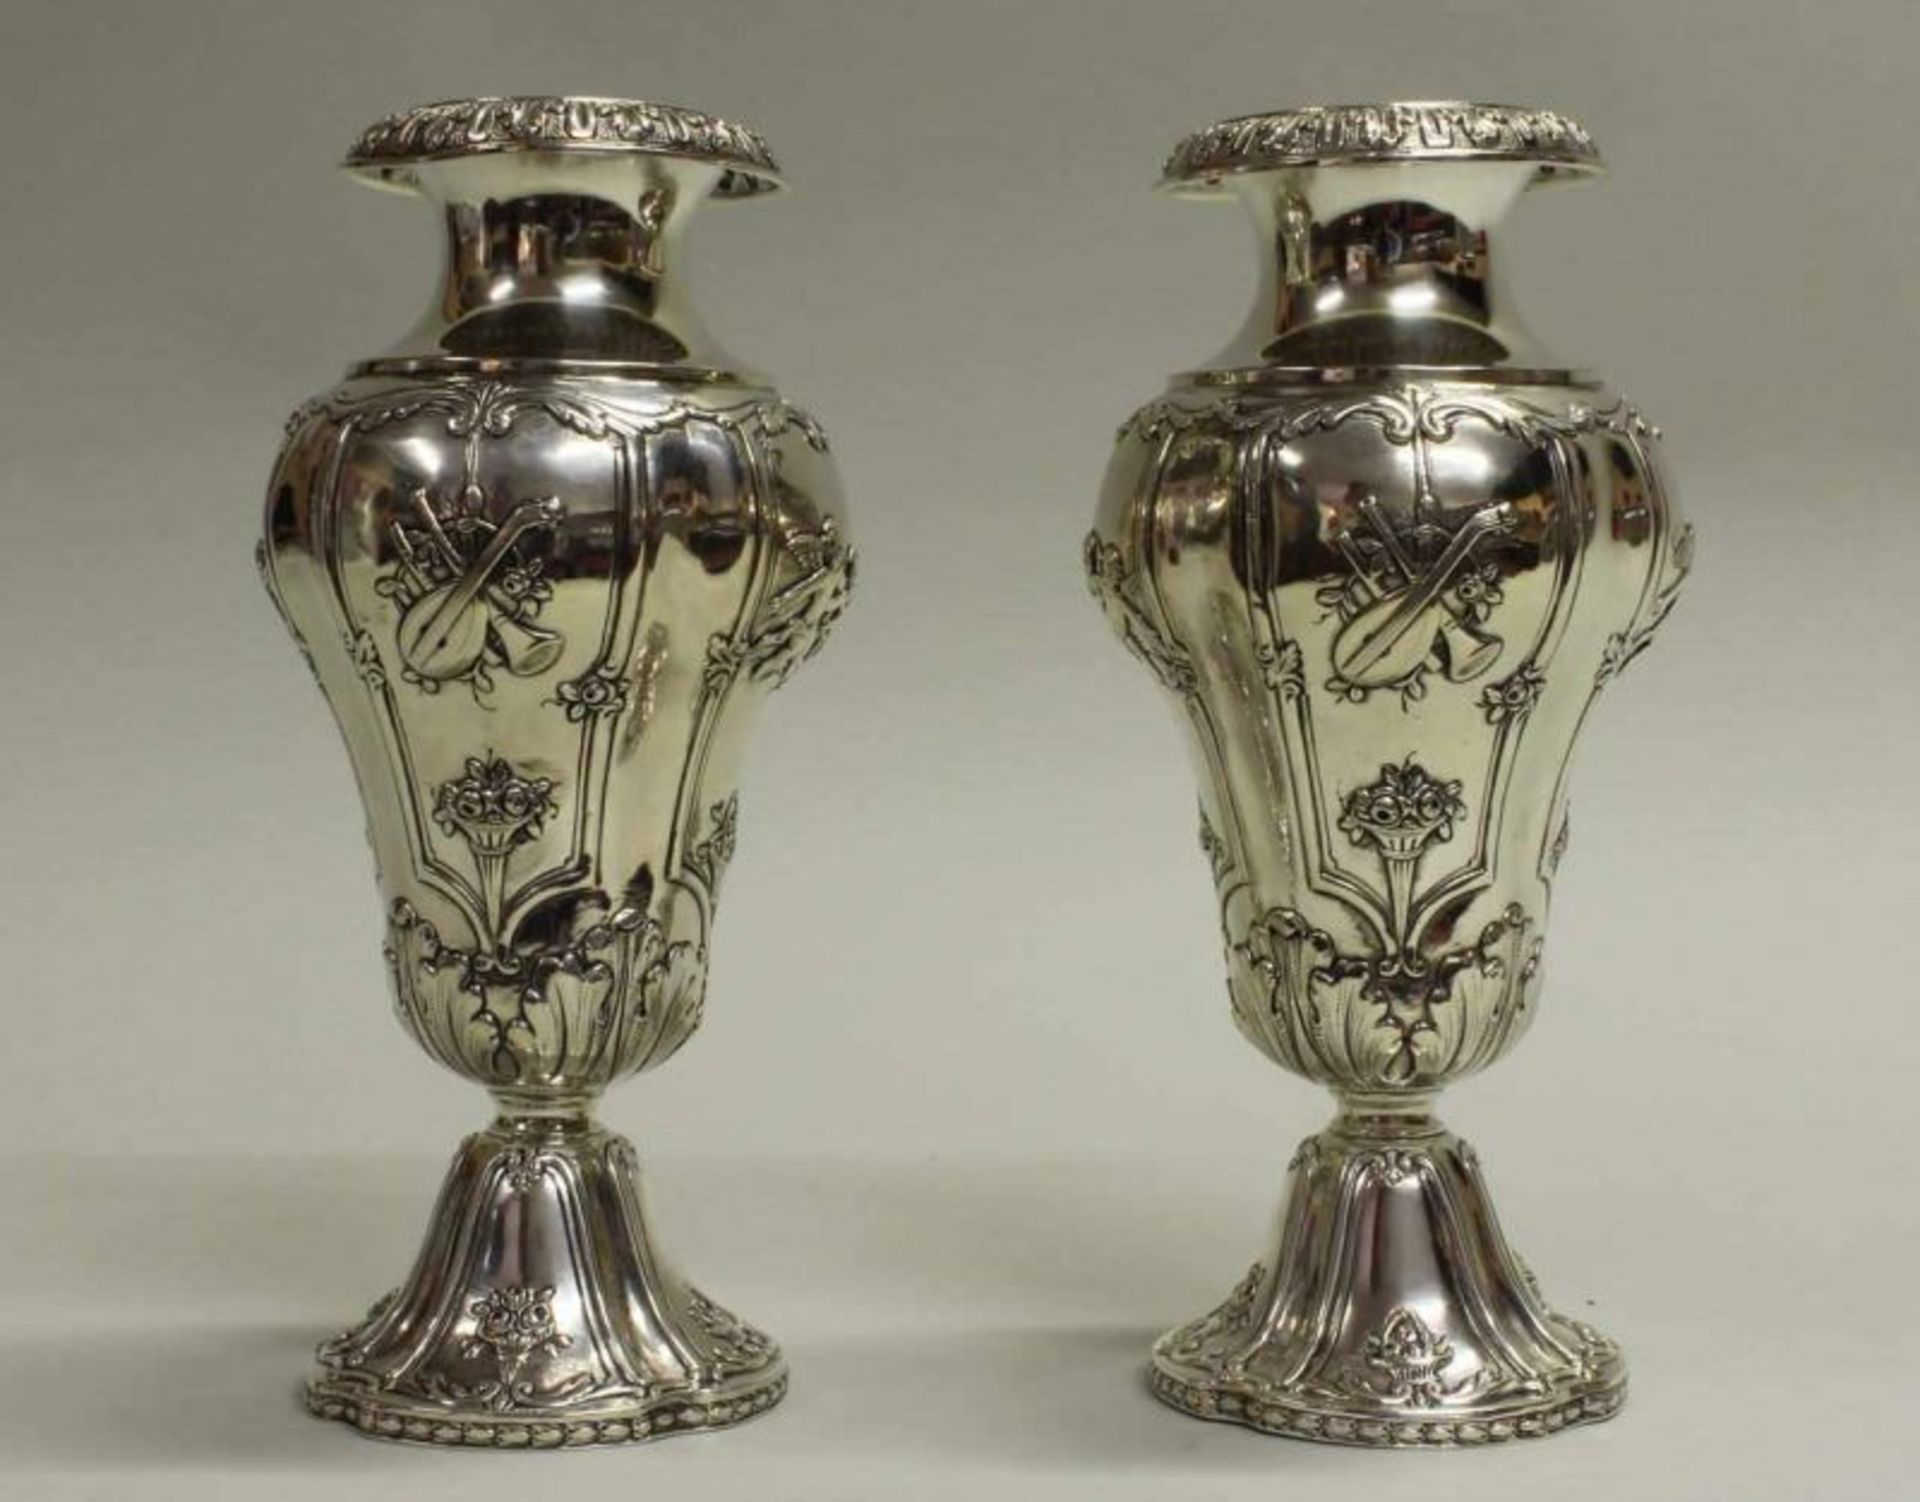 Paar Vasen, Silber, Hanau, um 1890, Neresheimer, Rokokoform, Reliefdekor mit Putten, Musikalien